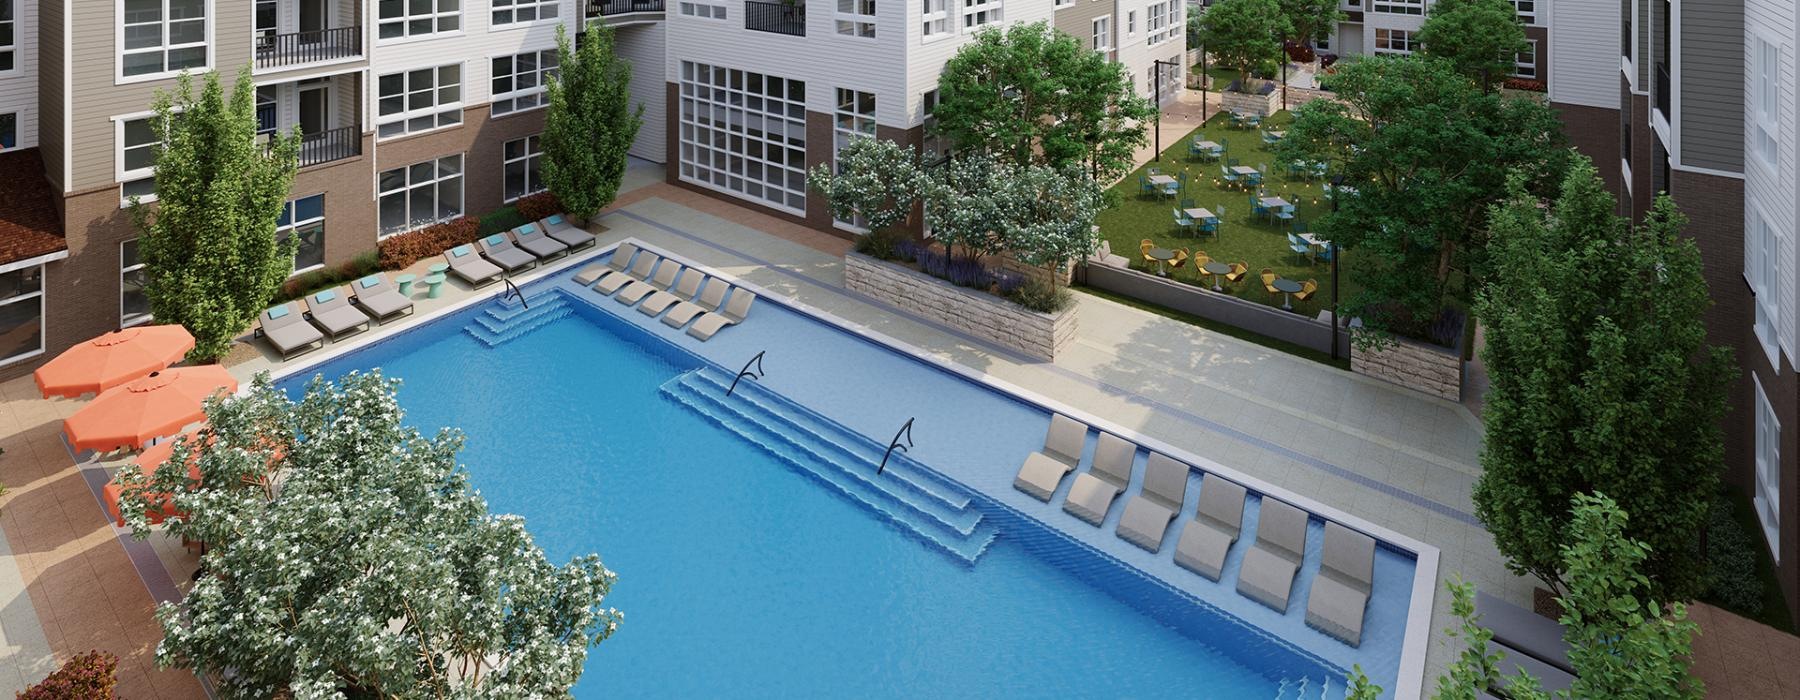 aerial rendering of swimming pool